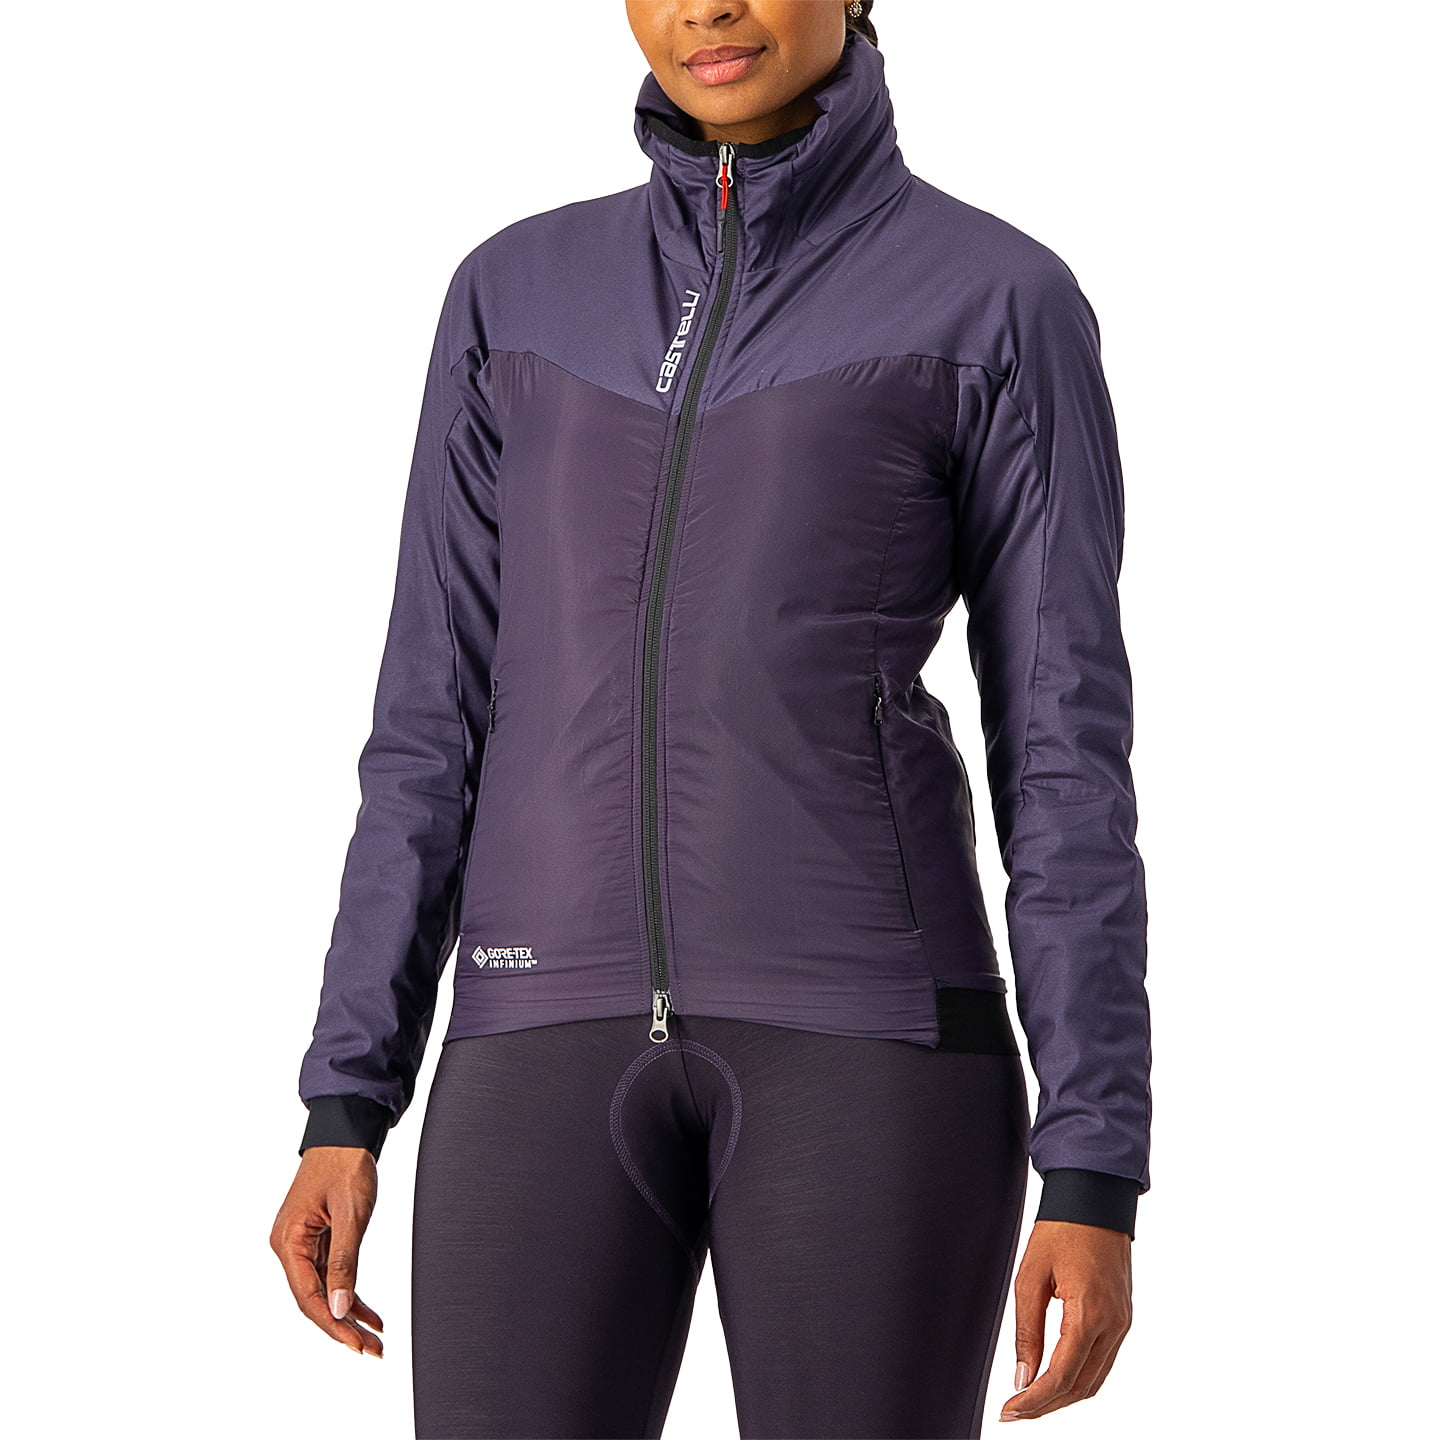 Women’s winter jacket Fly Thermal Women’s Thermal Jacket, size XL, Winter jacket, Cycling clothes